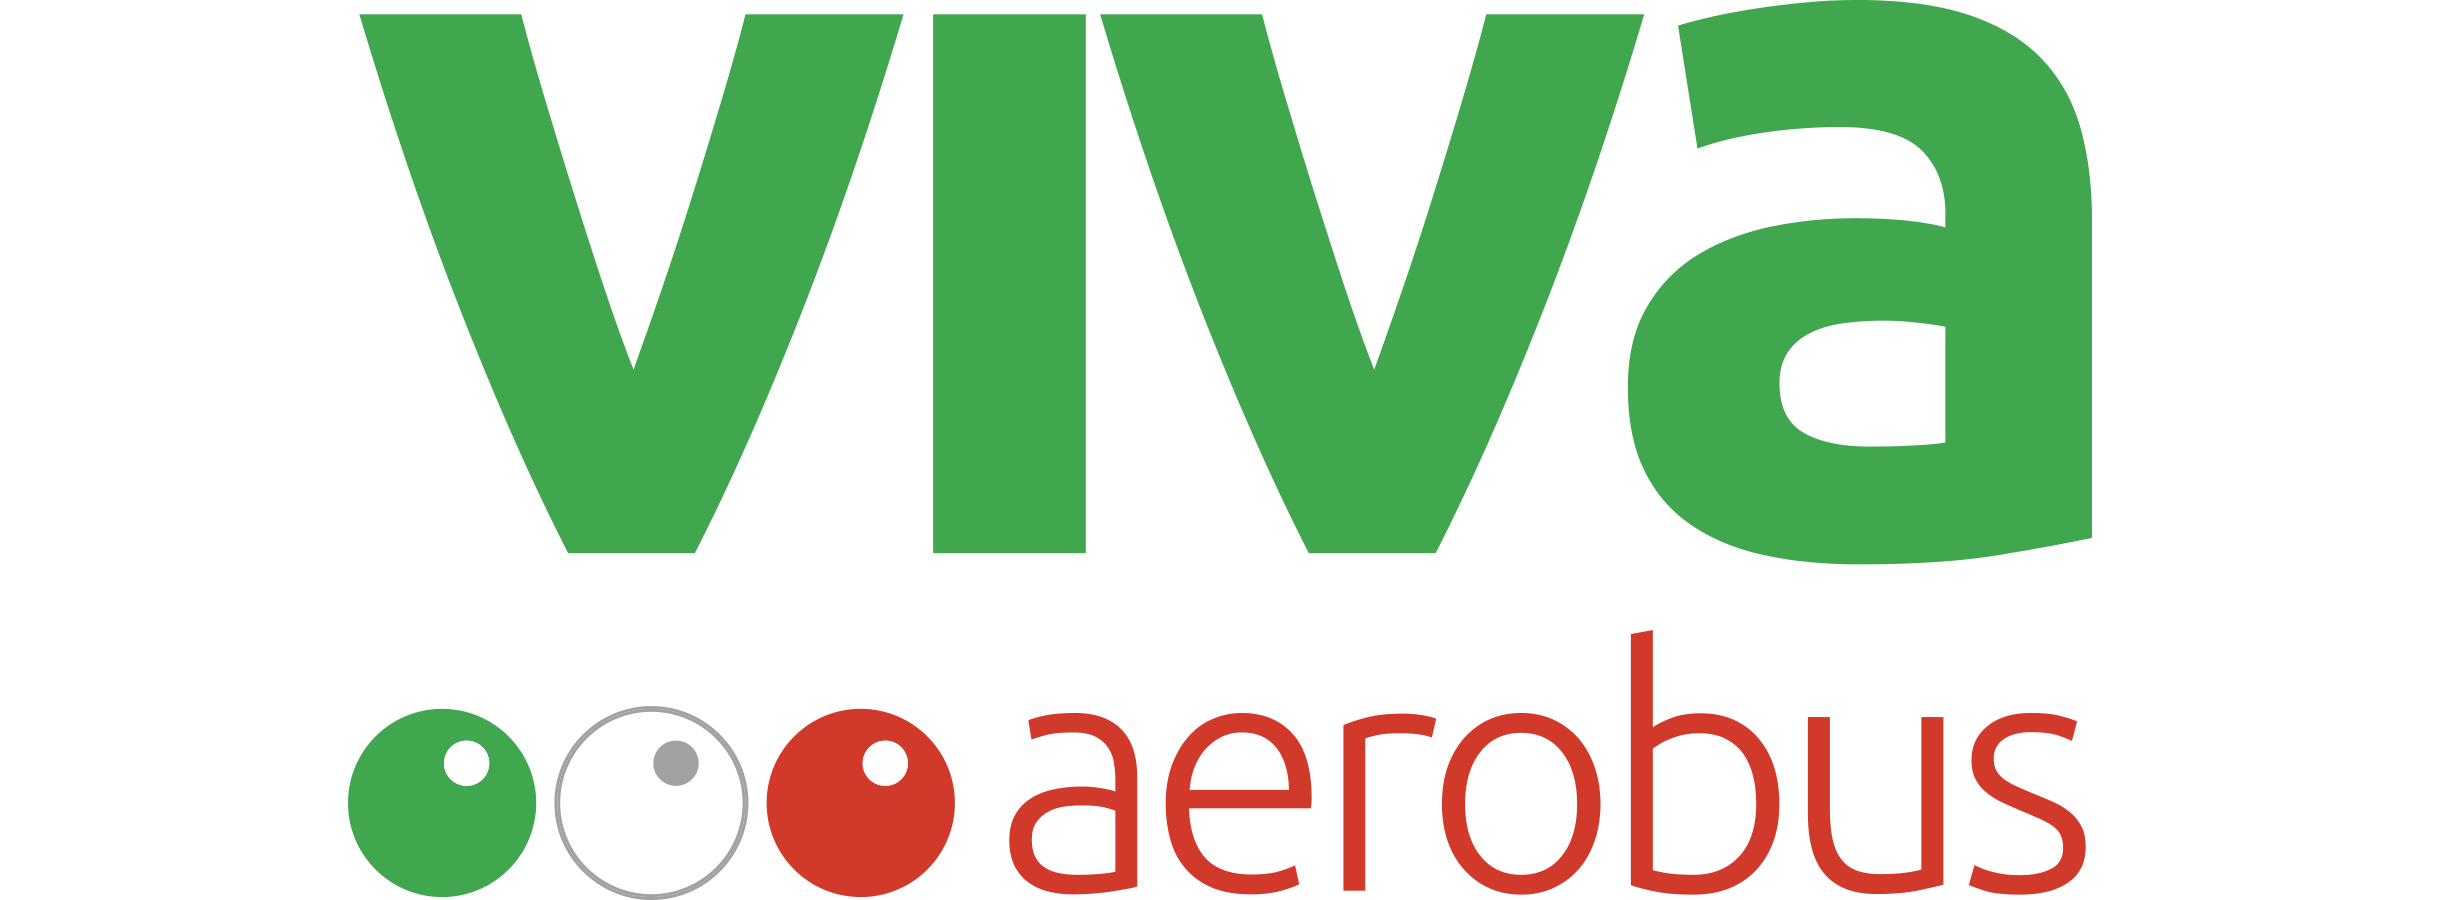 Viva-Aerobus evento físico 